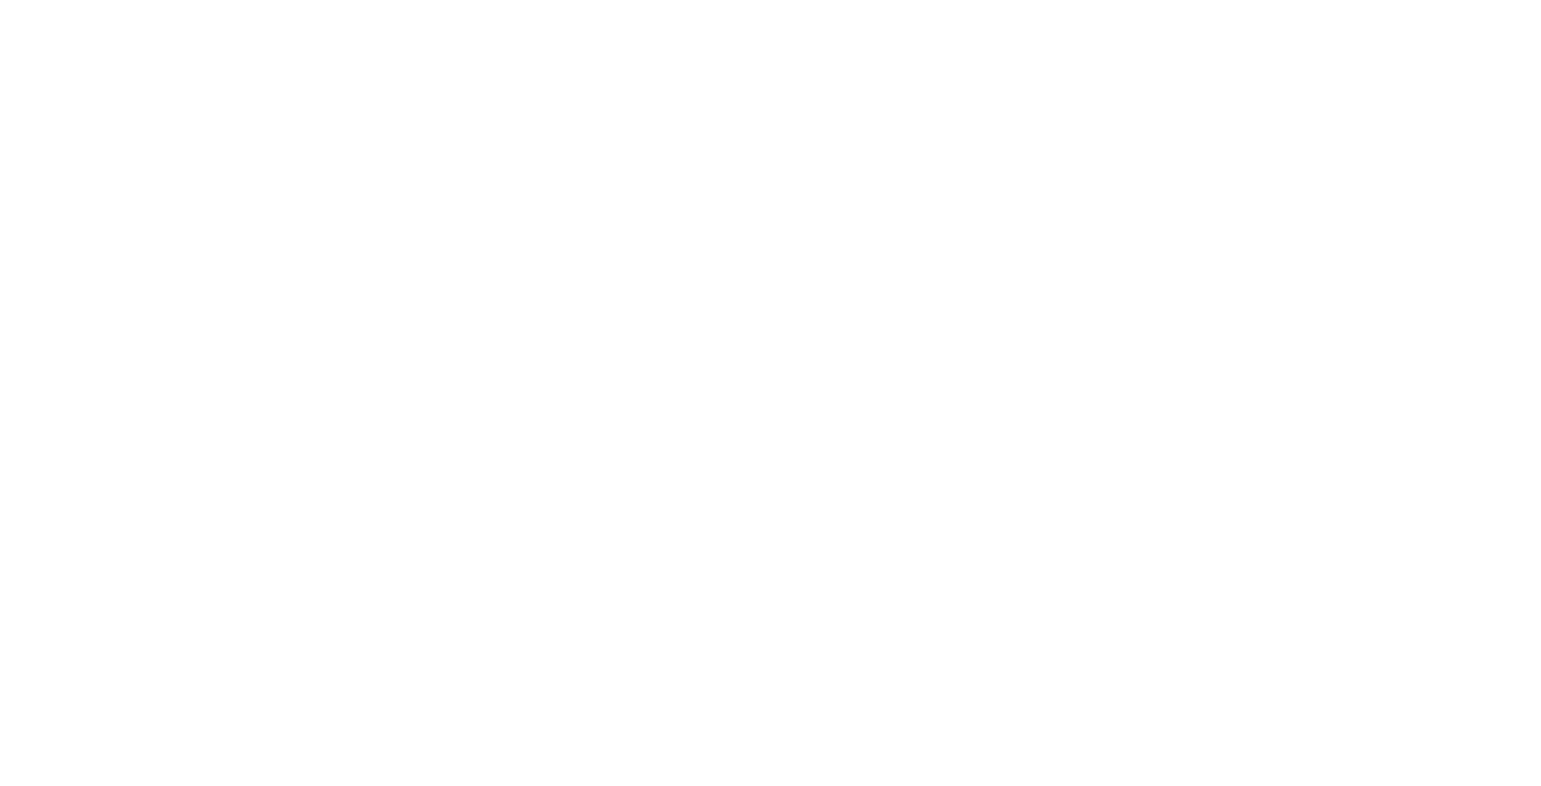 Industrivarden logo pour fonds sombres (PNG transparent)